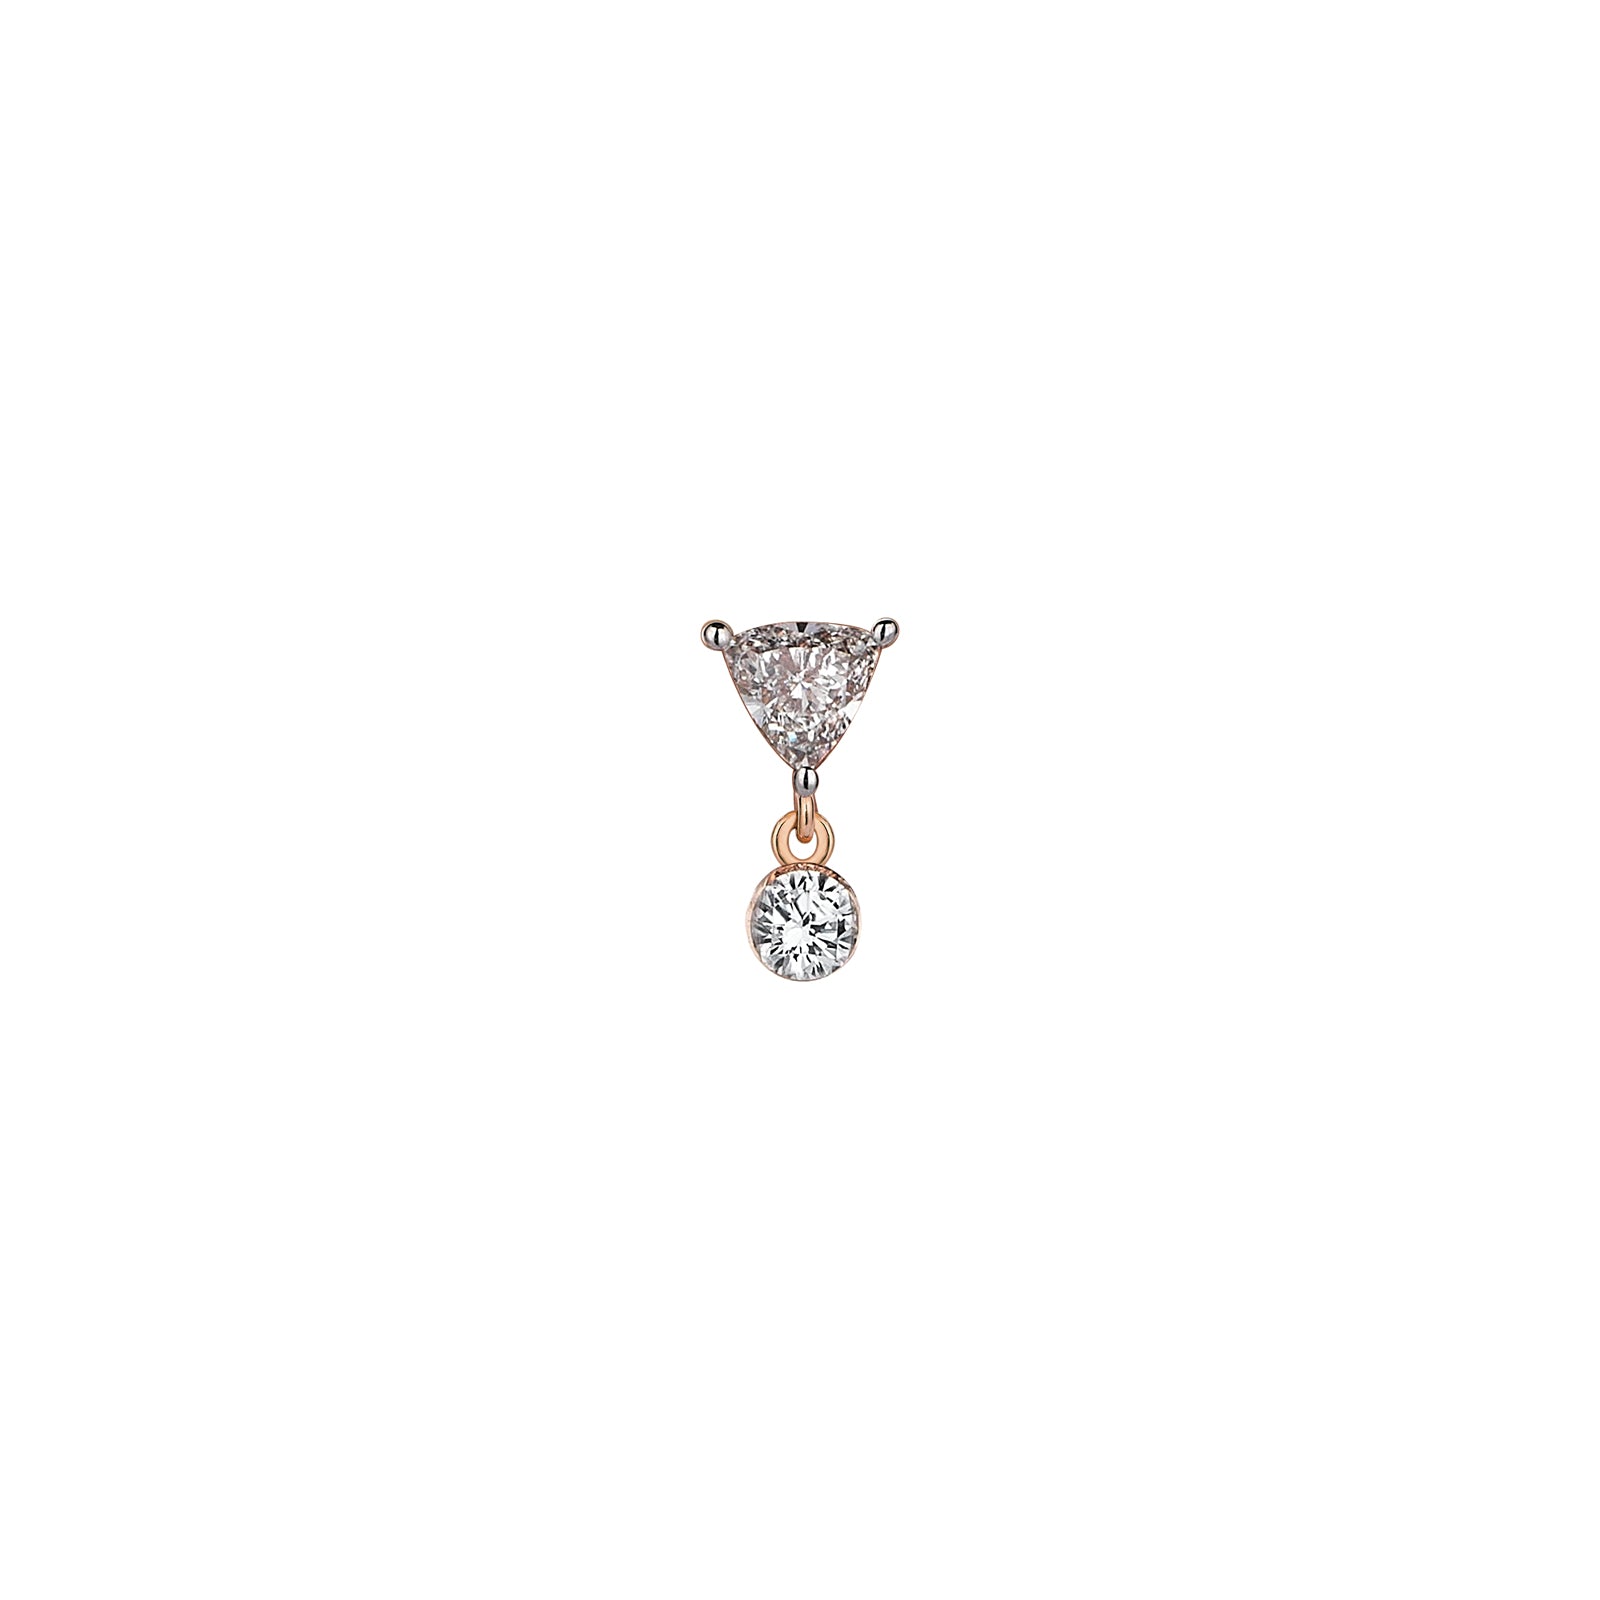 Celeste Earring Roslow Gold / White Brilliant Diamond